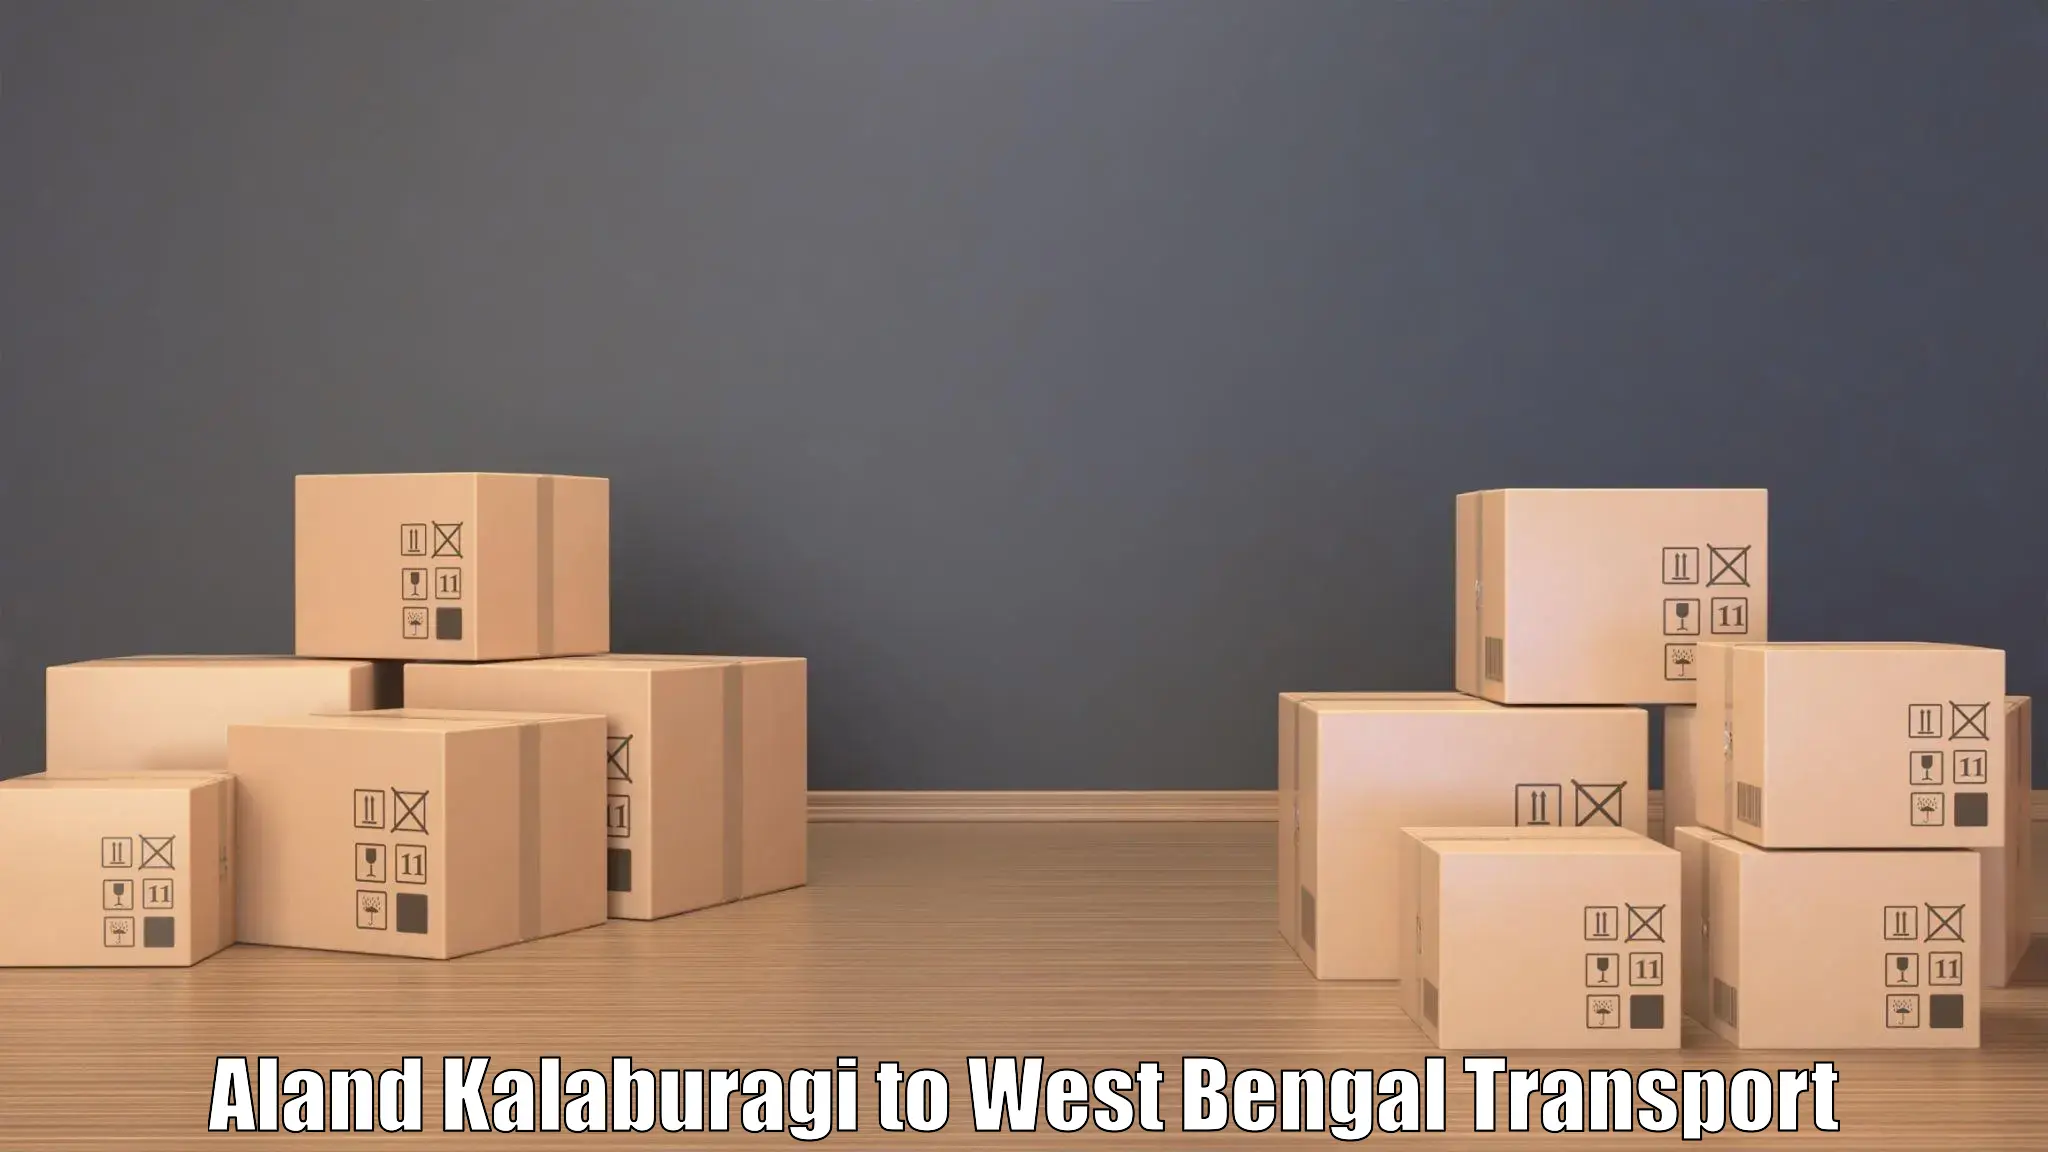 Air freight transport services Aland Kalaburagi to Kanchrapara